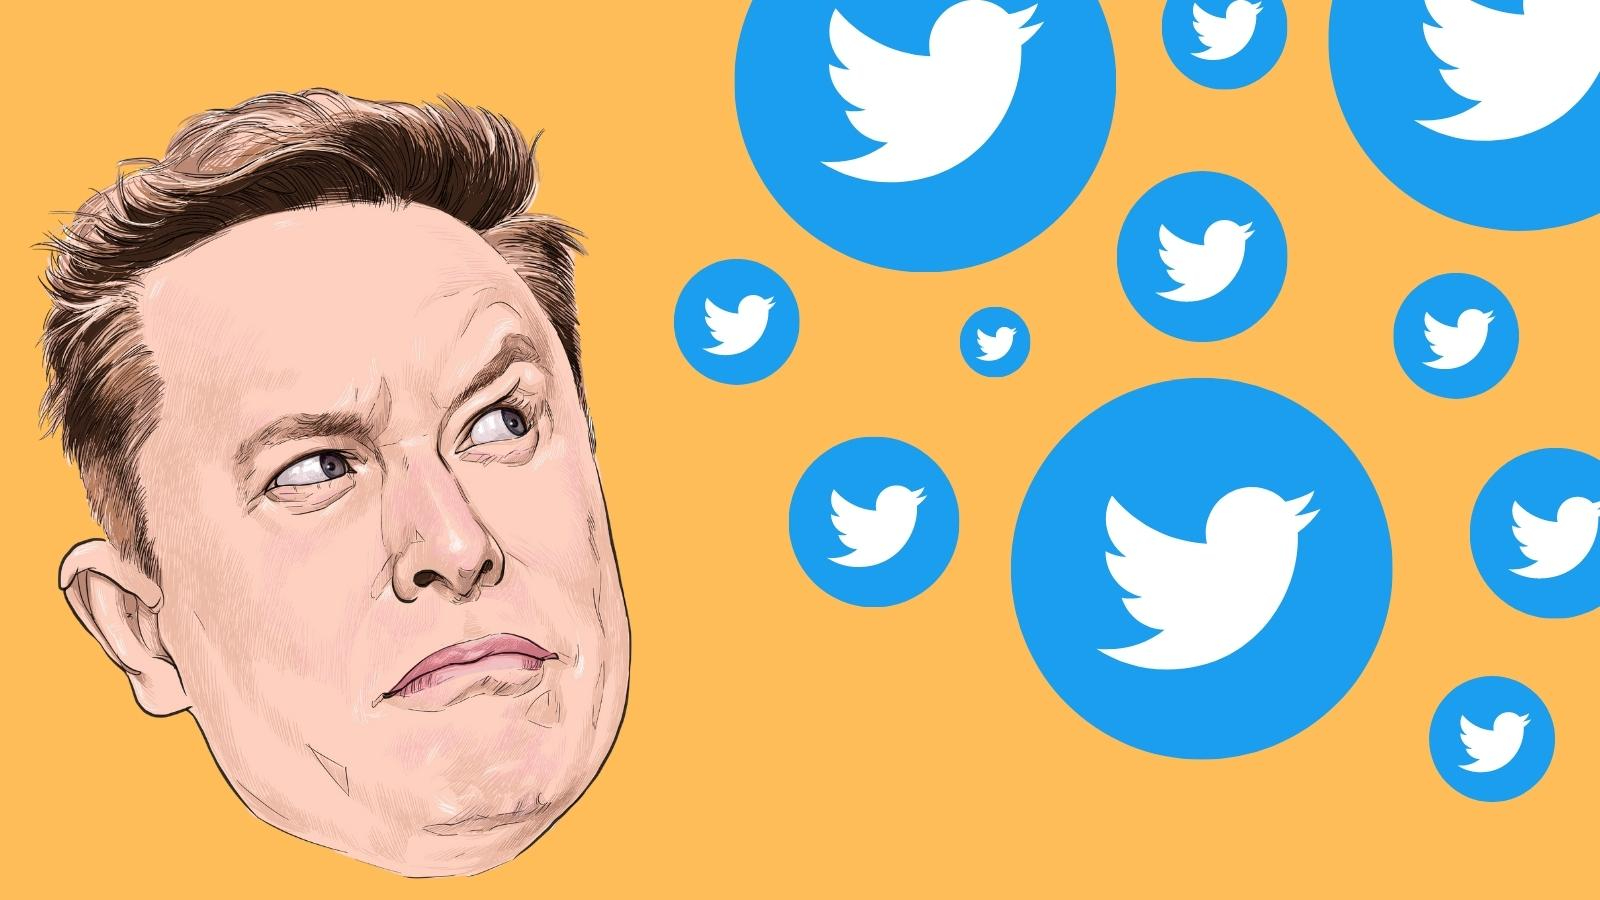 Live blog: Twitter chaos – Elon Musk postpones Blue Check